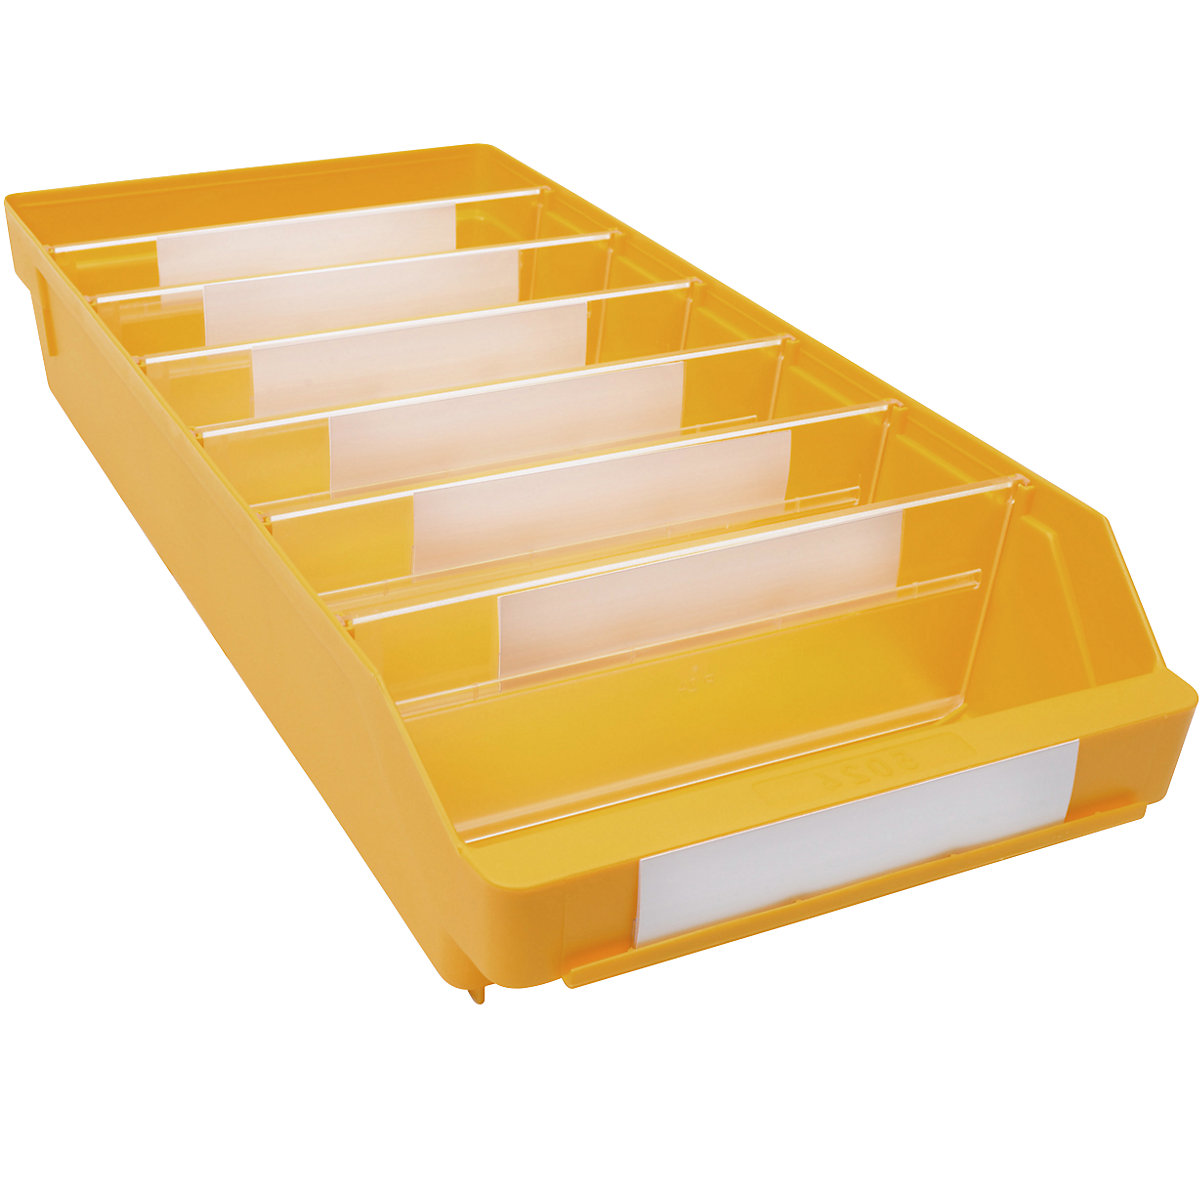 Cassettina per scaffali in polipropilene ad alta resistenza – STEMO, giallo, lungh. x largh. x alt. 500 x 240 x 95 mm, conf. da 15 pezzi-15